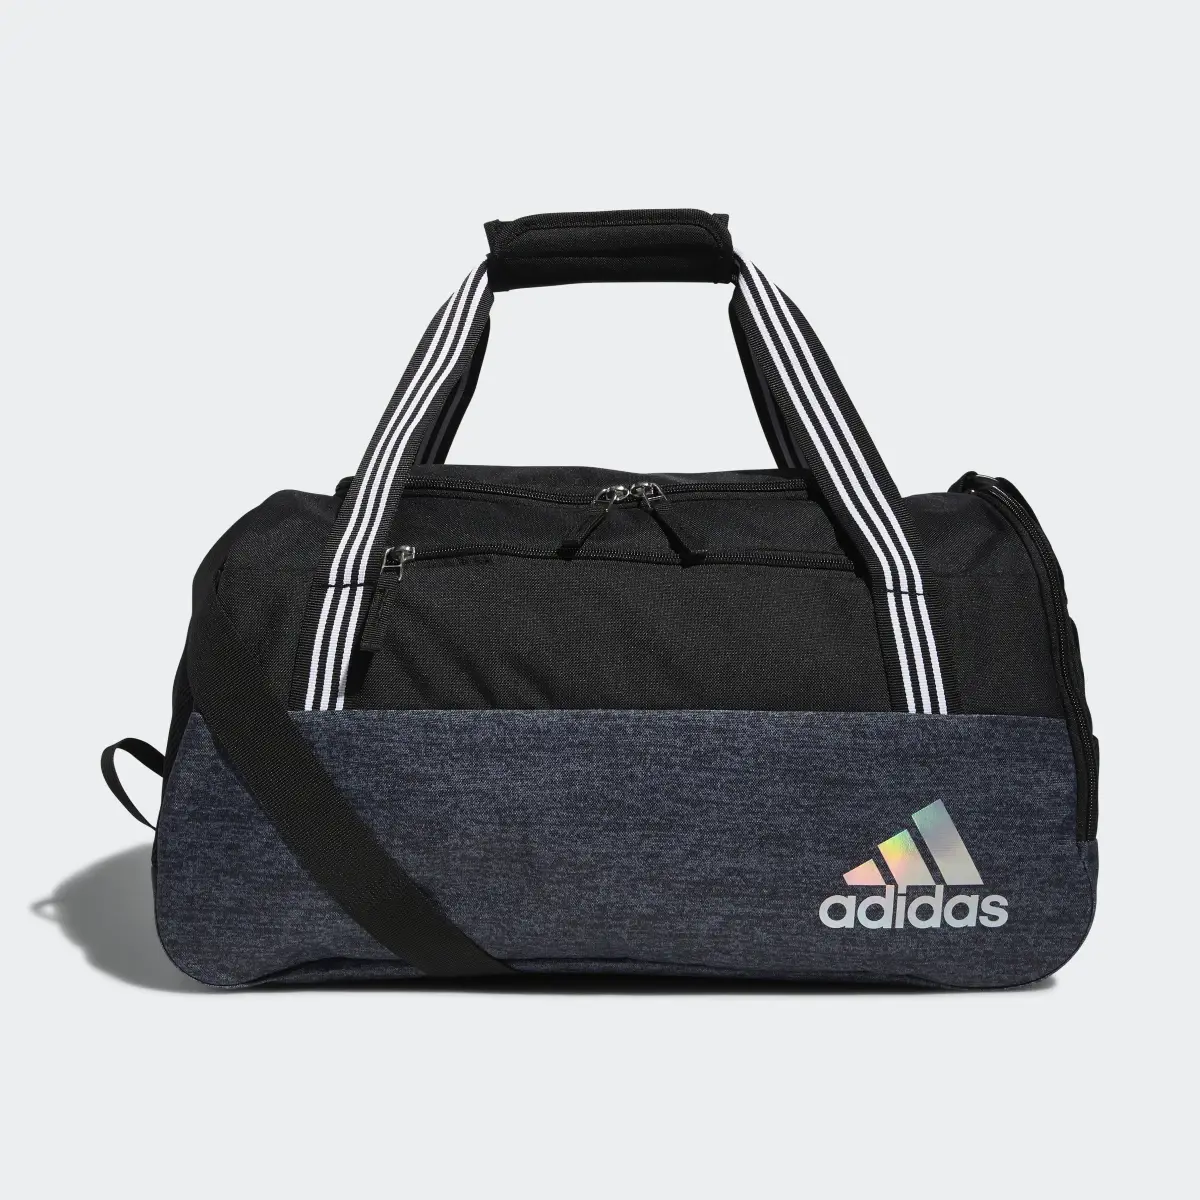 Adidas Squad Duffel Bag. 2